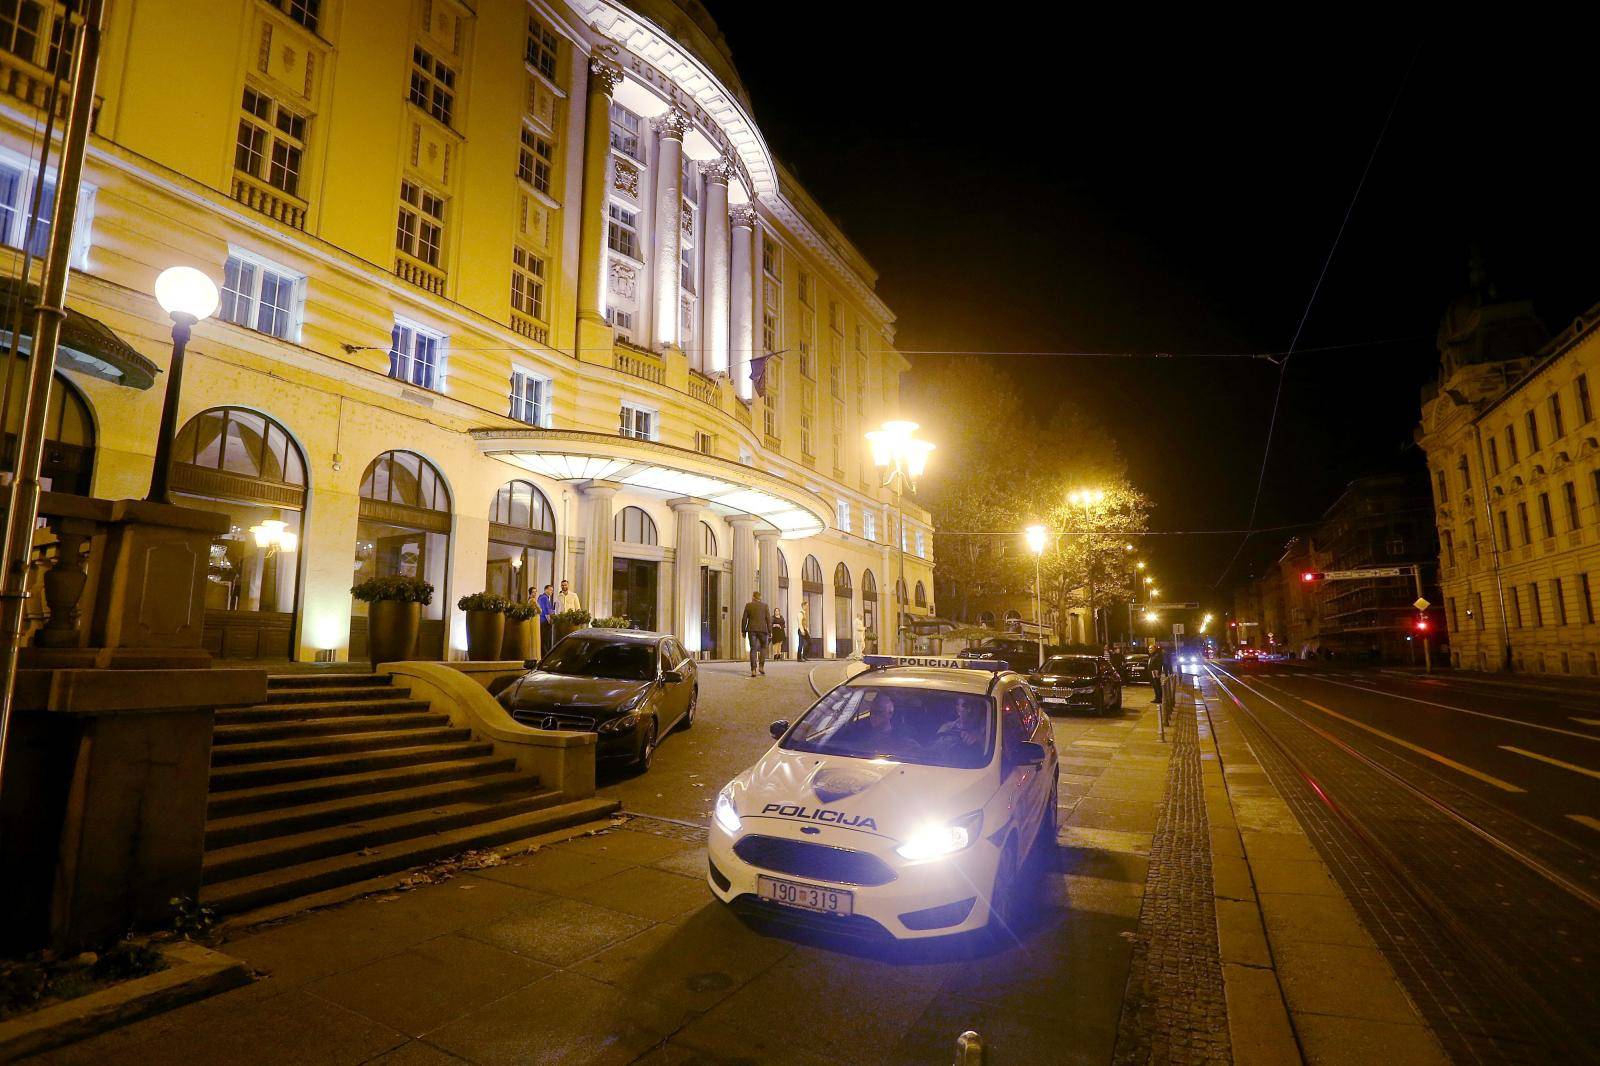 Petrač teško ozlijeđen u centru Zagreba, tragaju za napadačem